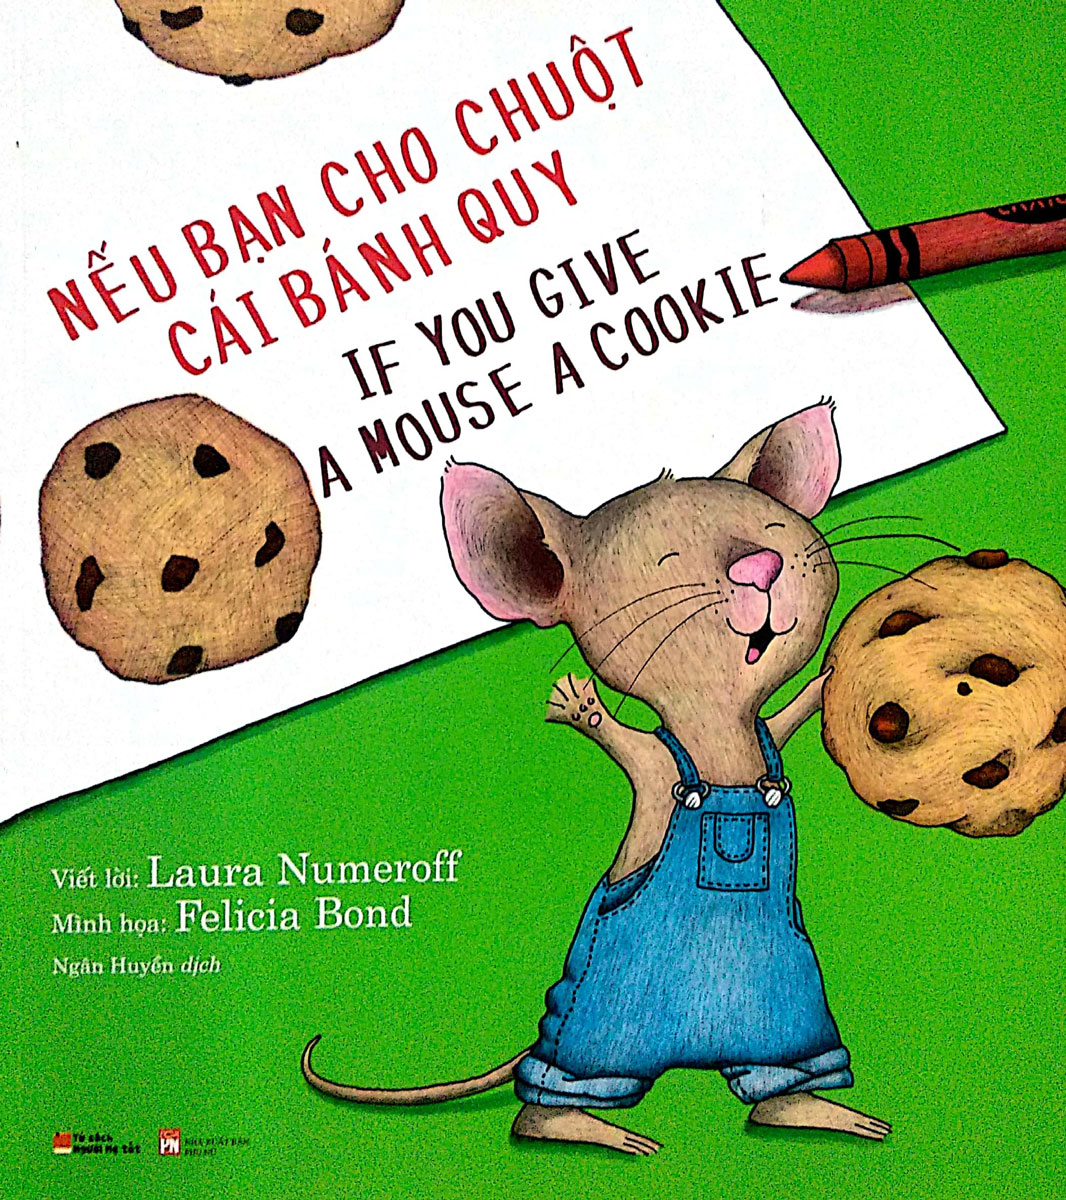 Nếu Bạn Cho Chuột Cái Bánh Quy - If You Give A Mouse A Cookie